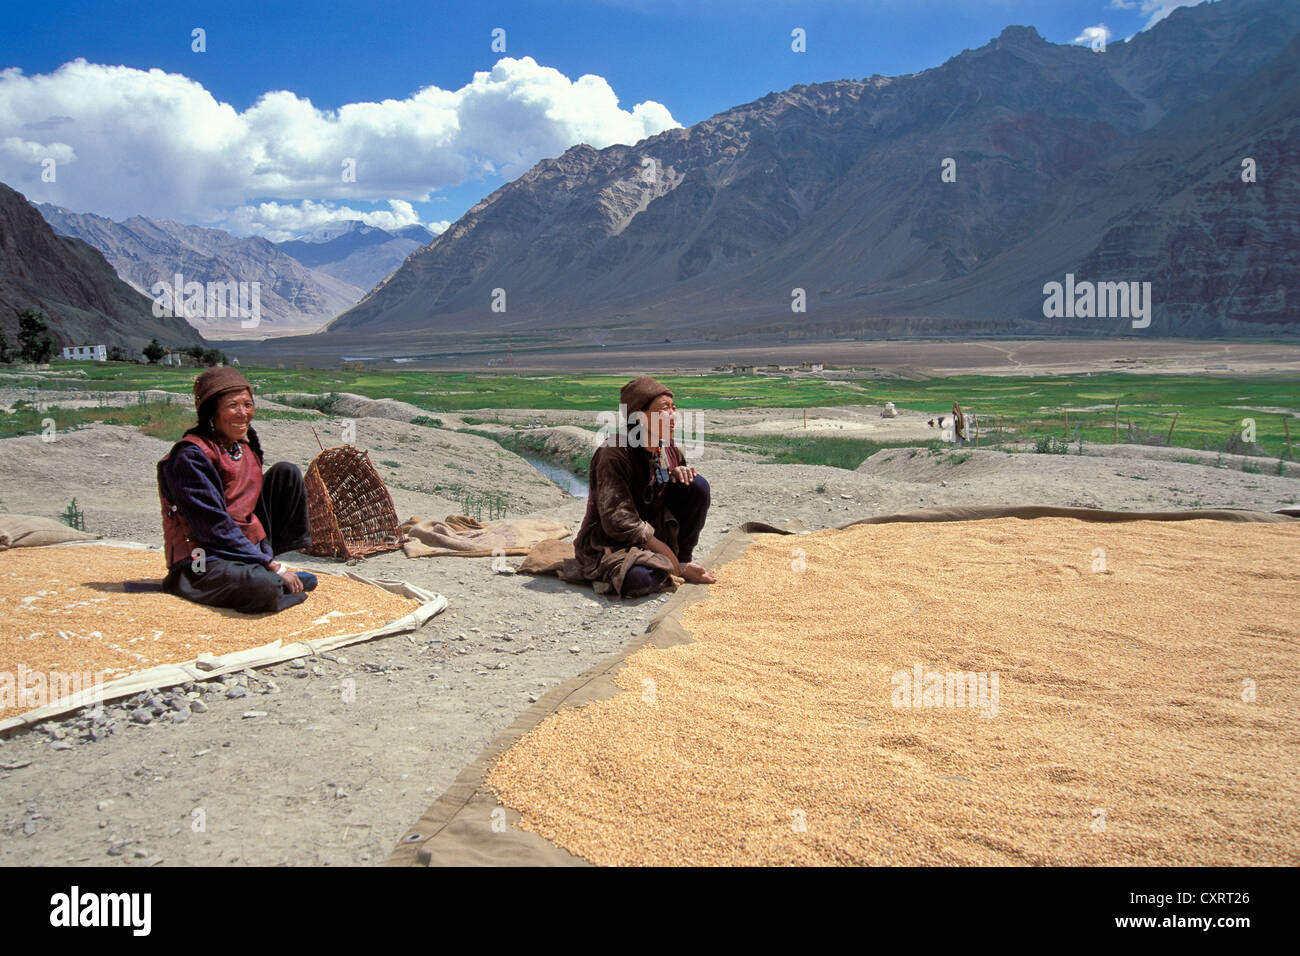 Zanskari femmes avec le grain récolté, l'orge, près de Zangla, Zanskar, Ladakh, le Jammu-et-Cachemire, l'Inde du Nord, Inde Banque D'Images